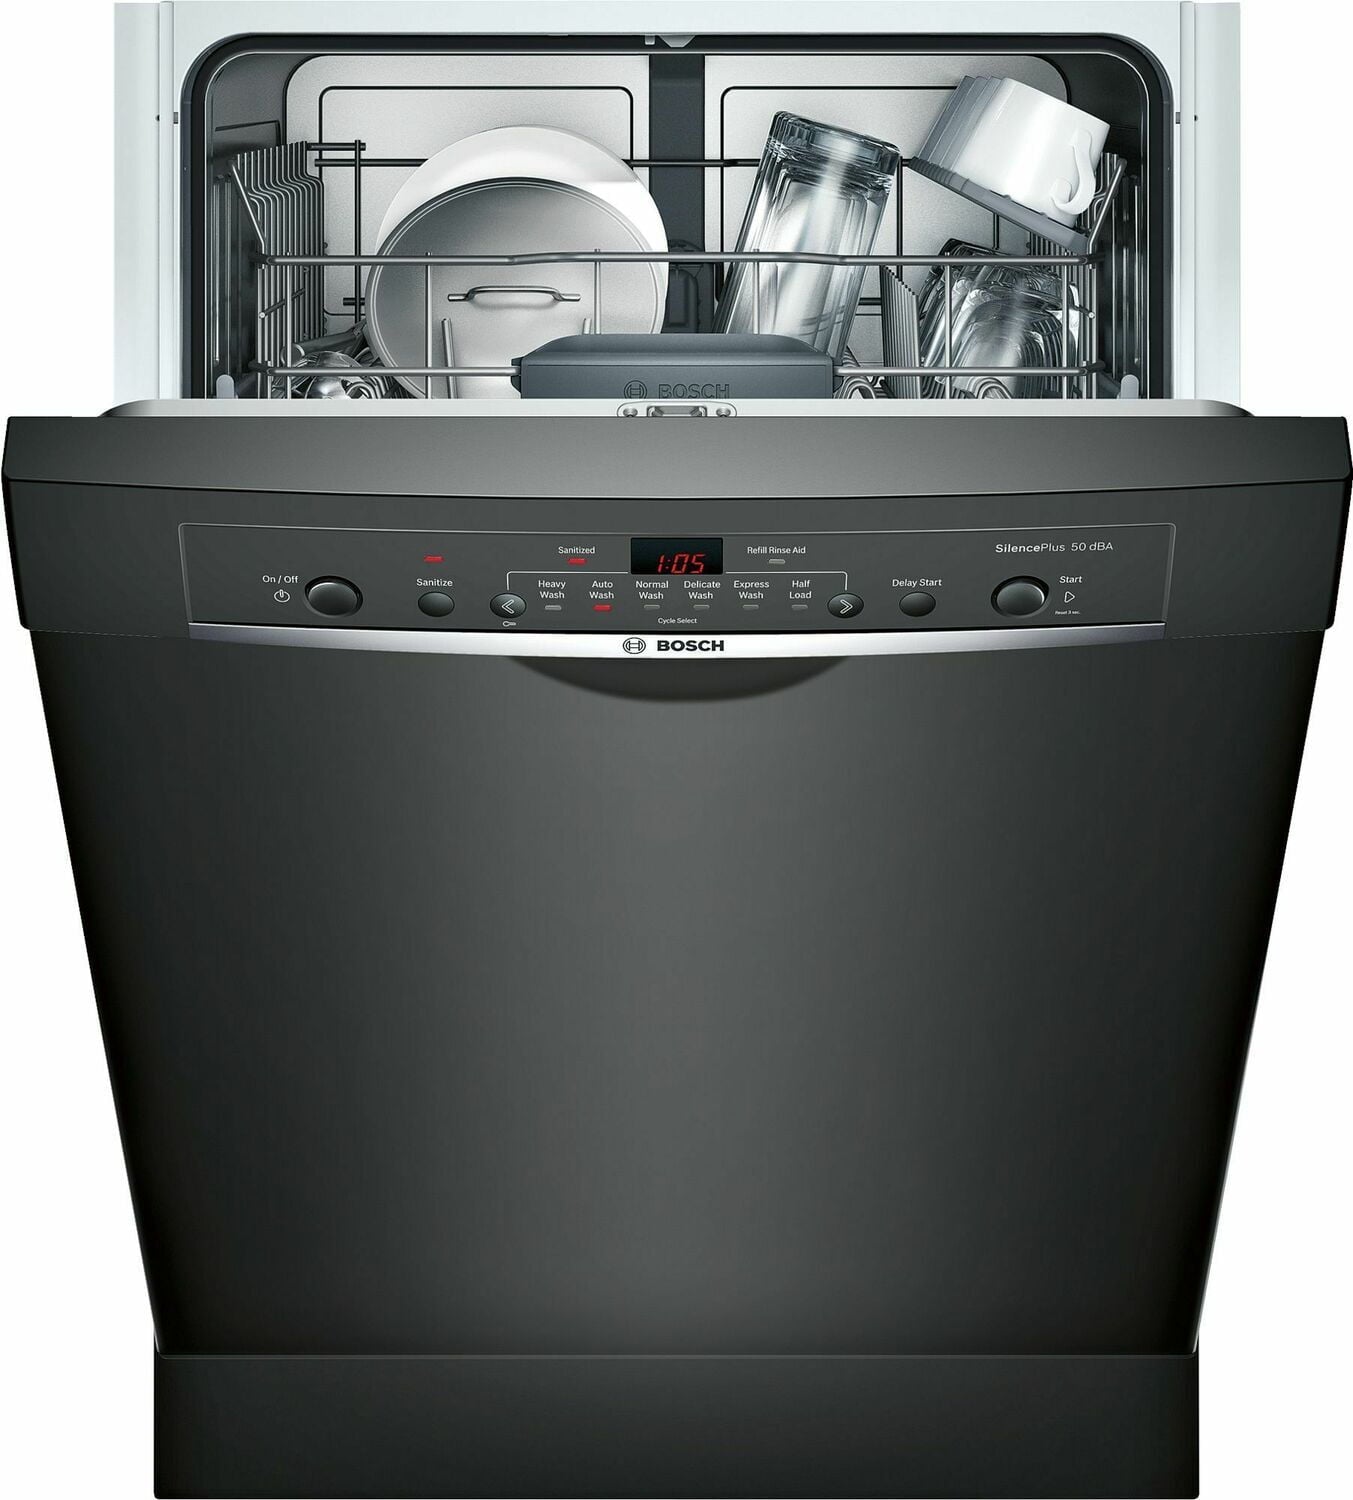 Встраиваемая посудомоечная машина bosch silence. Посудомойка Bosch Silence. Посудомойка бош Сайленс плюс. Посудомойка бош 45 см черная. Посудомоечная машина Bosch 60 черная.